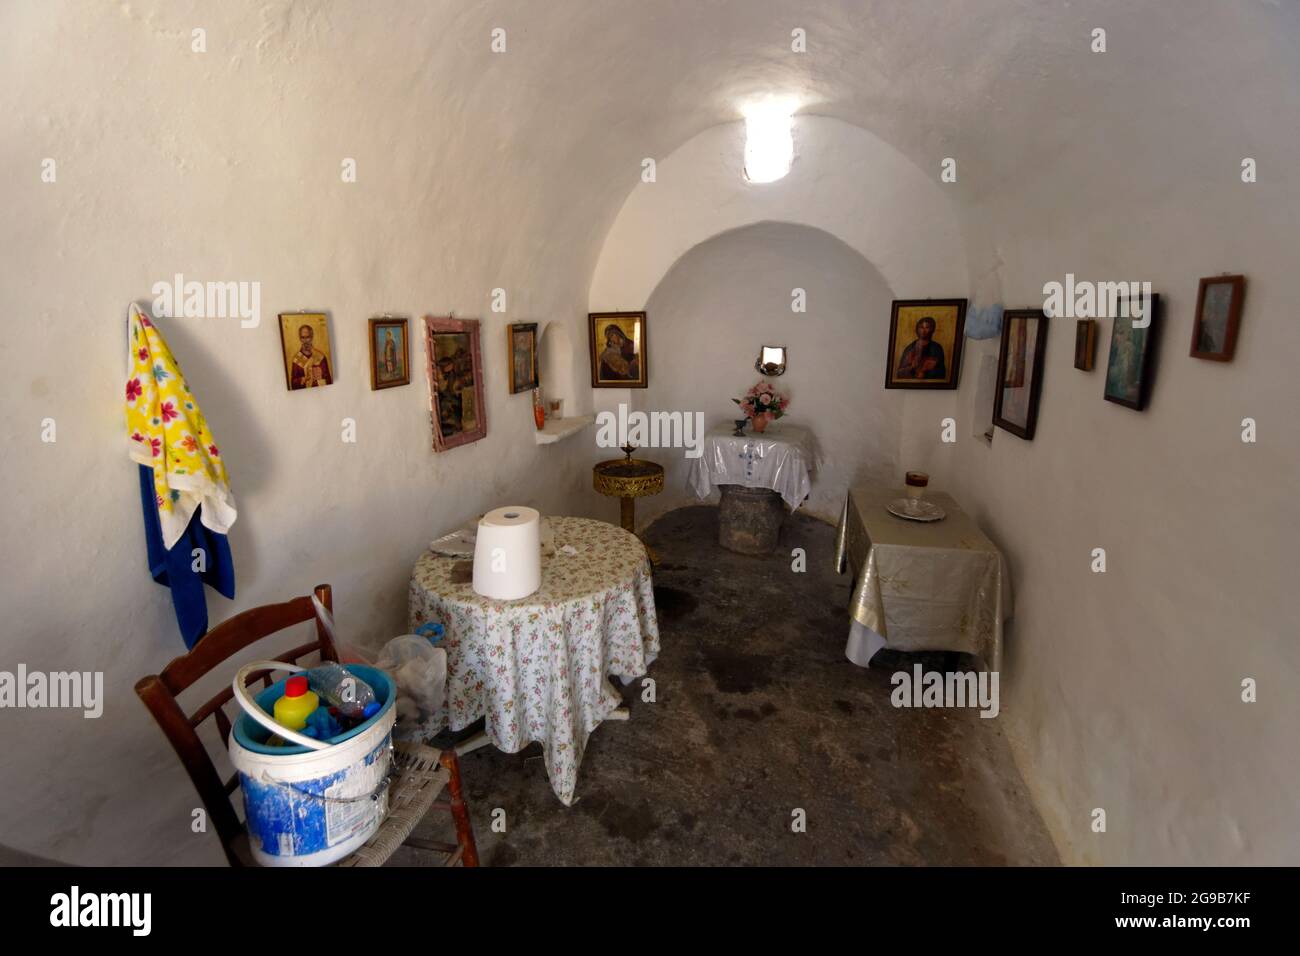 Interior of Panagia Church, Megalo Horio, Tilos, Dodecanese Islands, Southern Aegean, Greece. Stock Photo